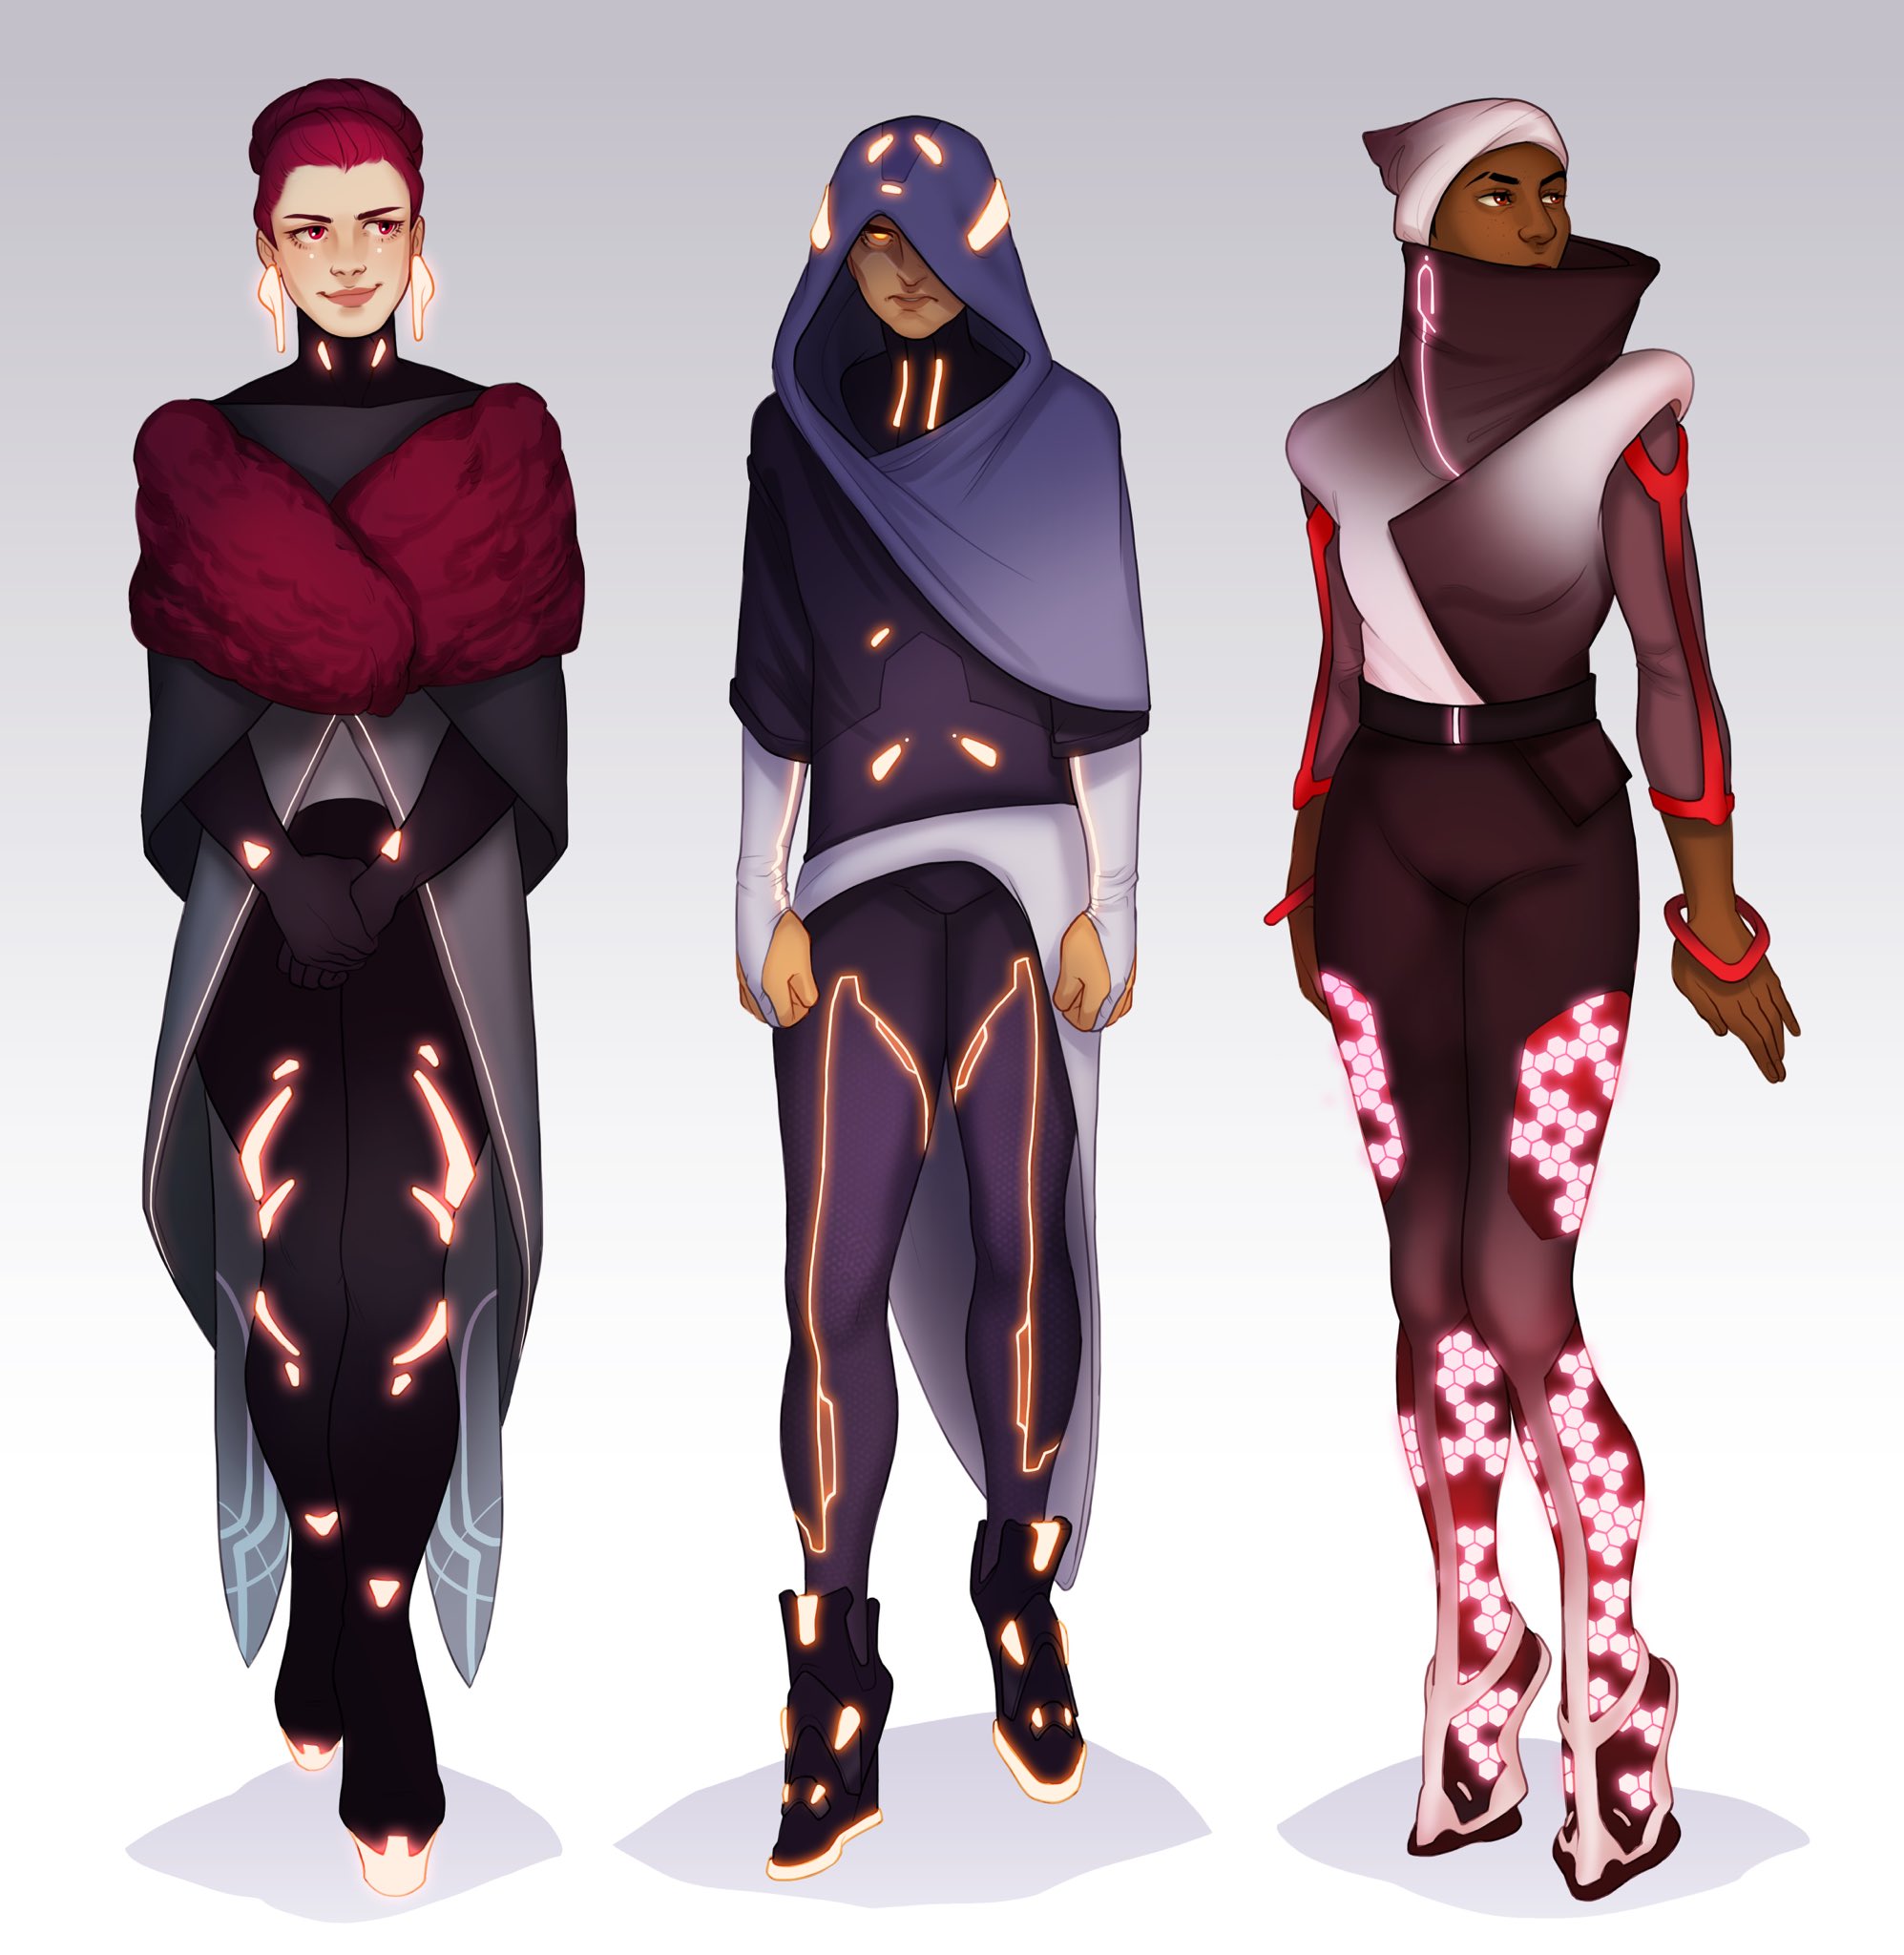 futuristic outfit ideas